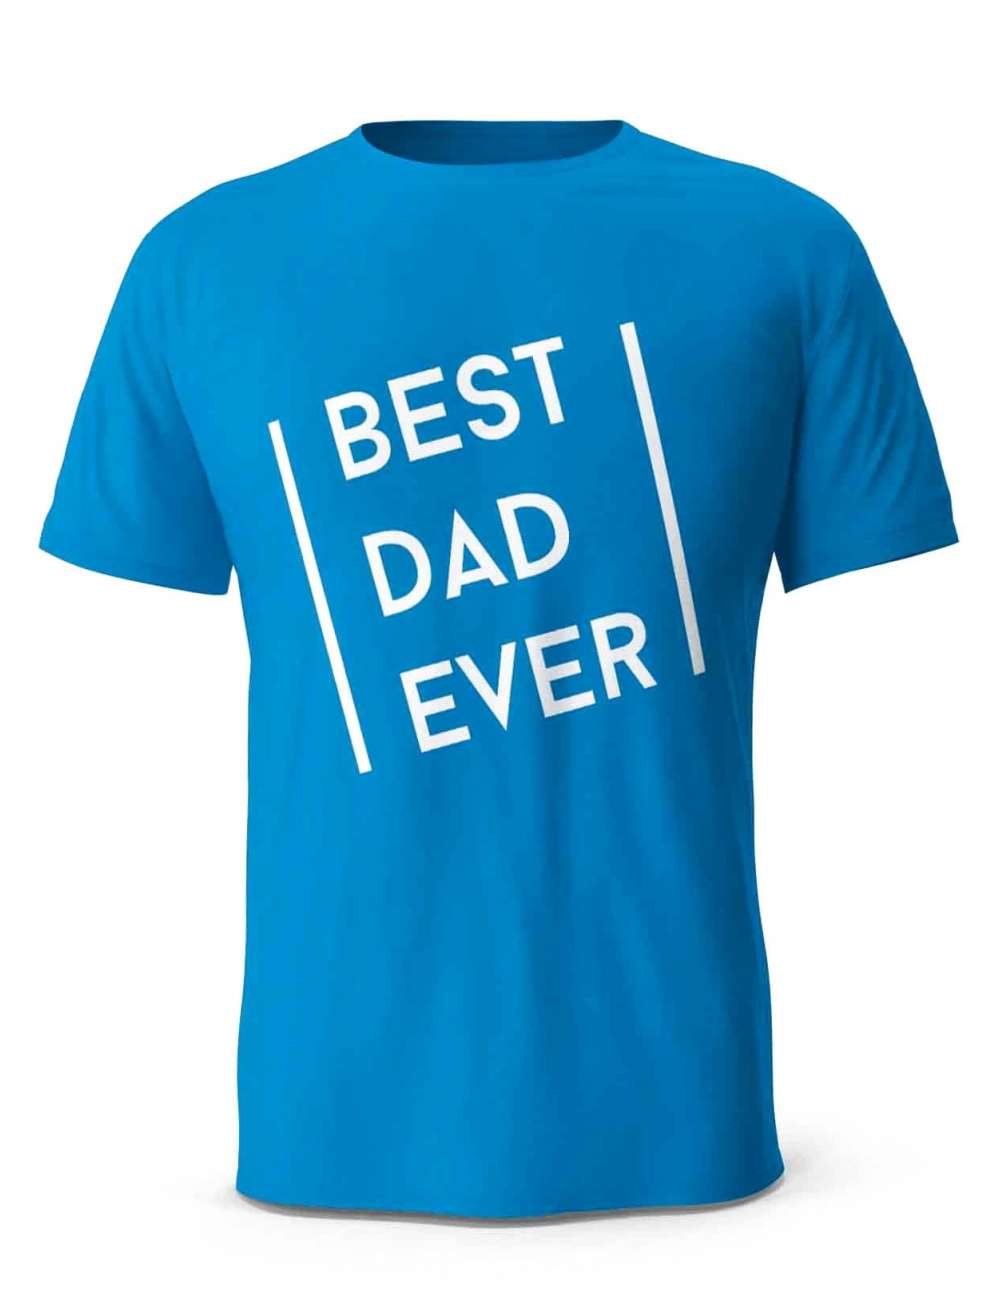 Koszulka Best Dad Ever, Prezent T-shirt dla Taty